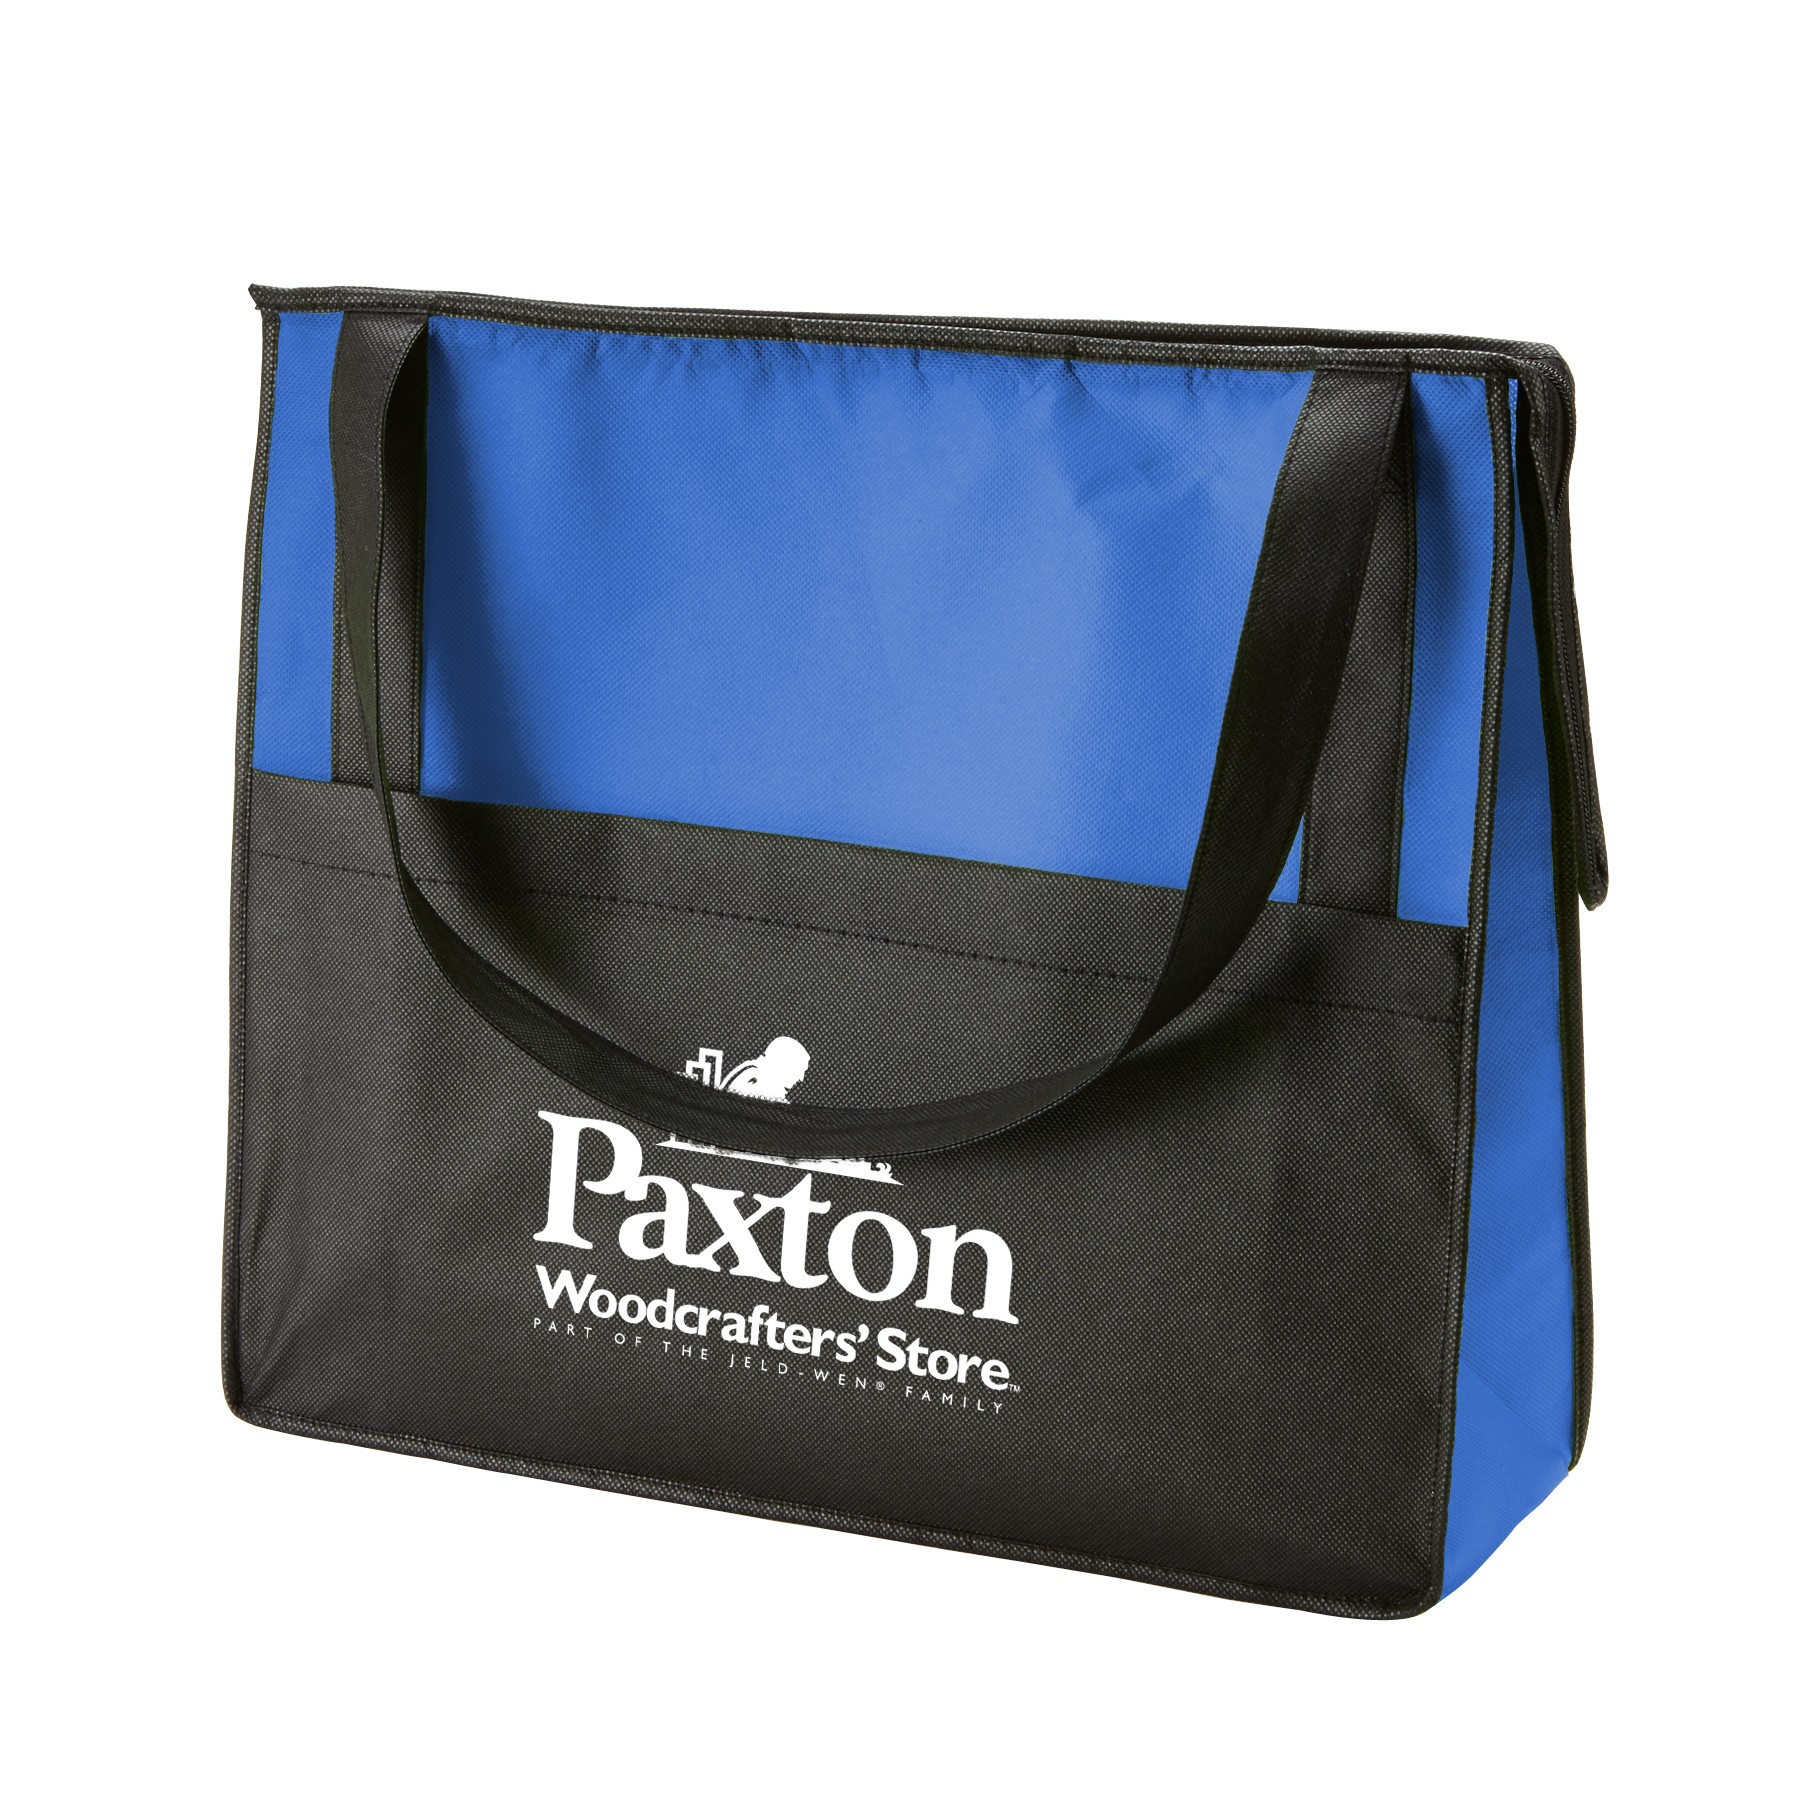 Wholesale Tote Non Woven Bag with Zipper Nonwoven Shopping Bag Reusable Bag